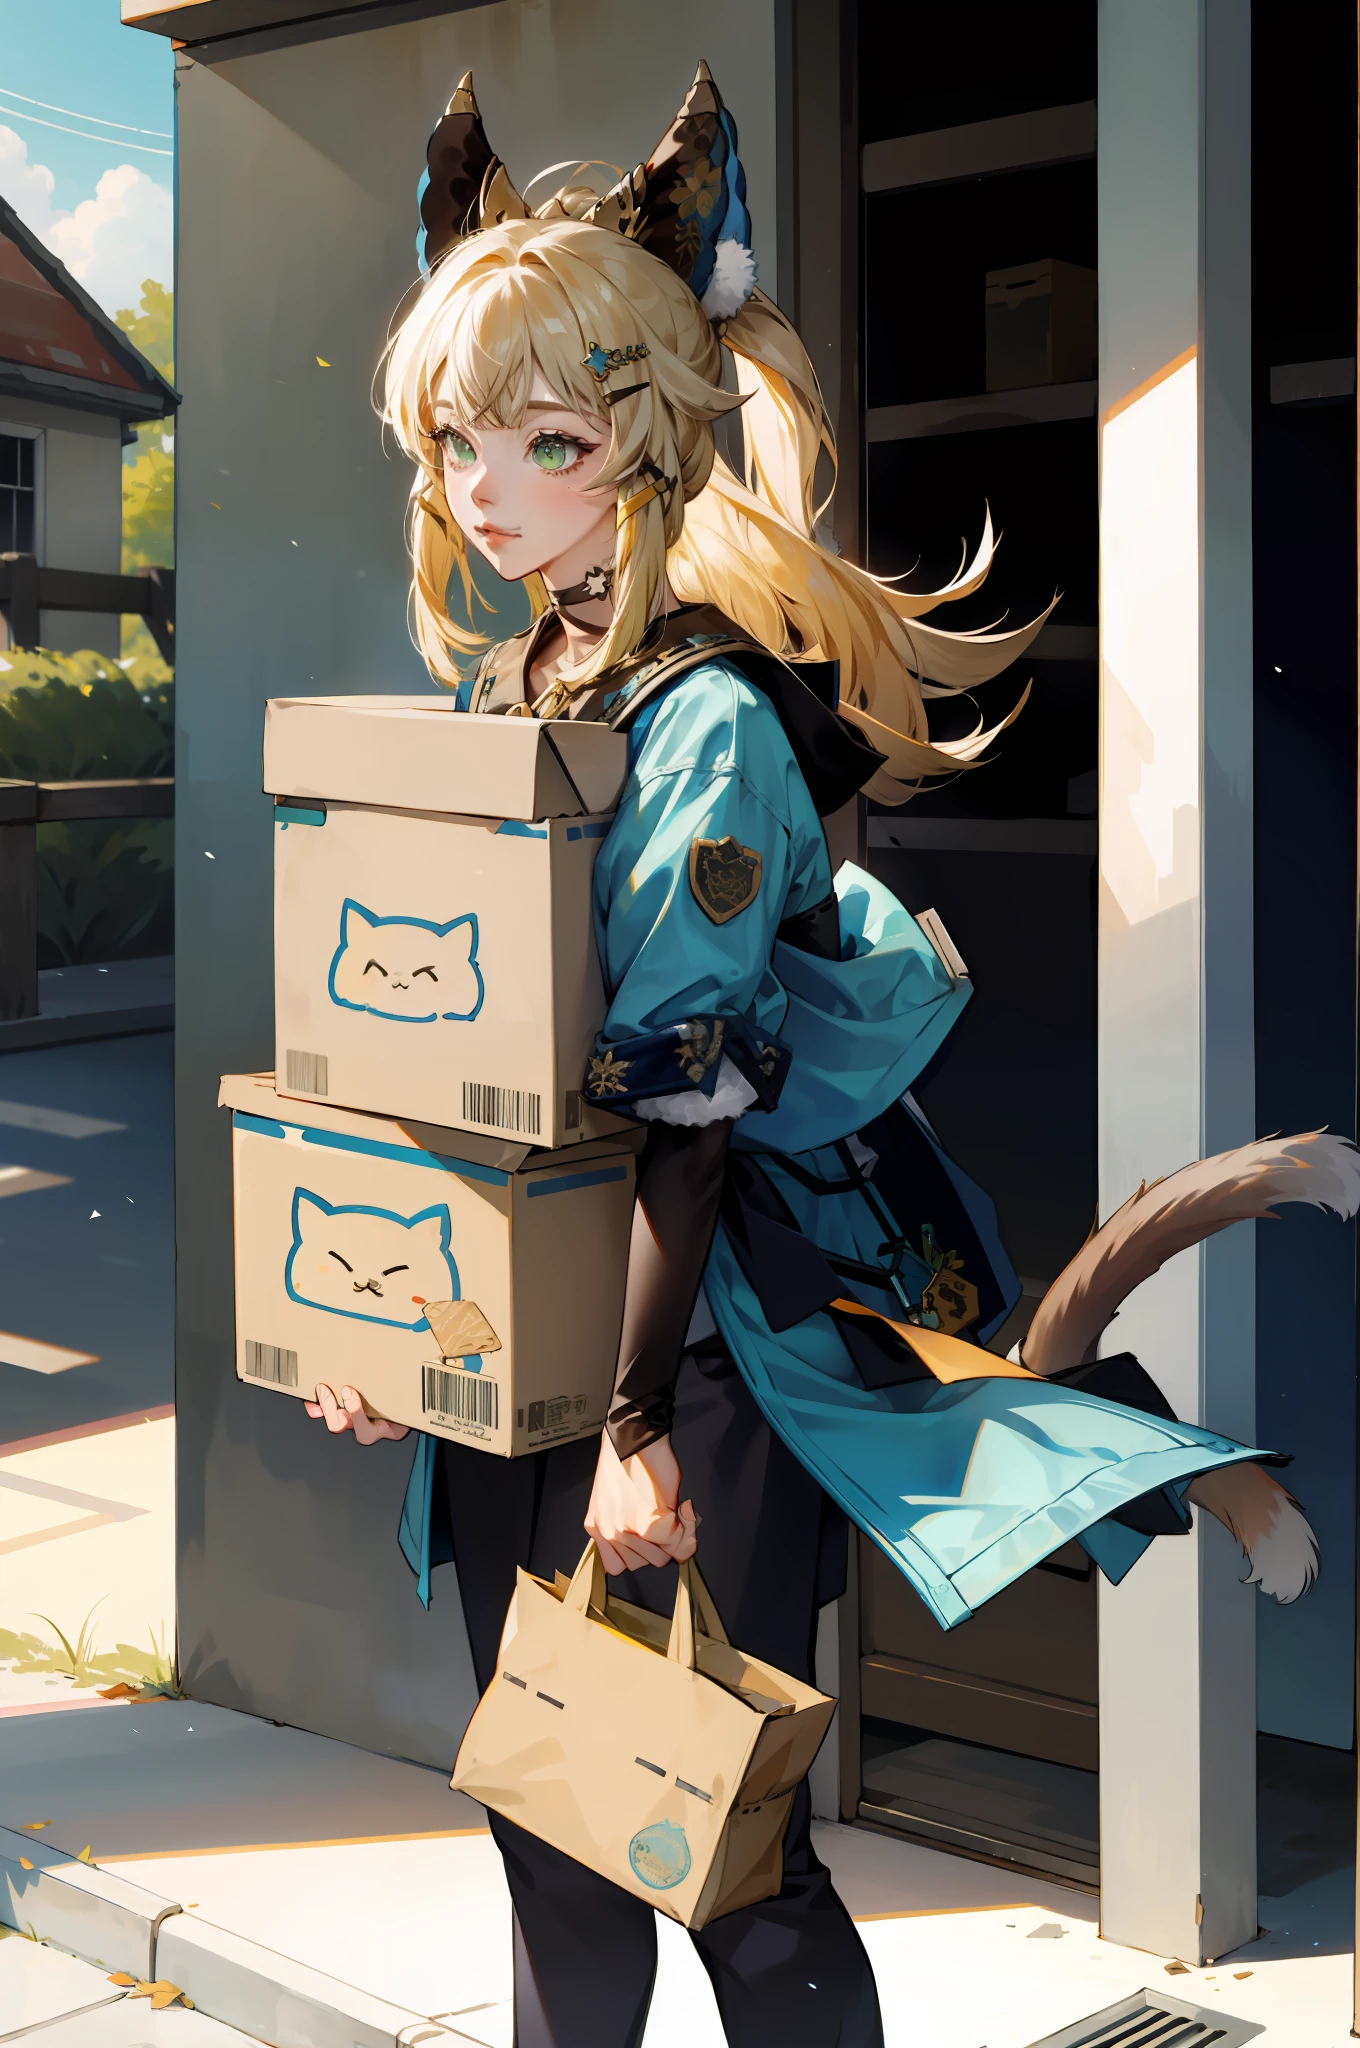 ((傑作)), 1 名女孩独奏, 貓耳朵. 2 尾, 持有包裹, 很多盒子, 郵局